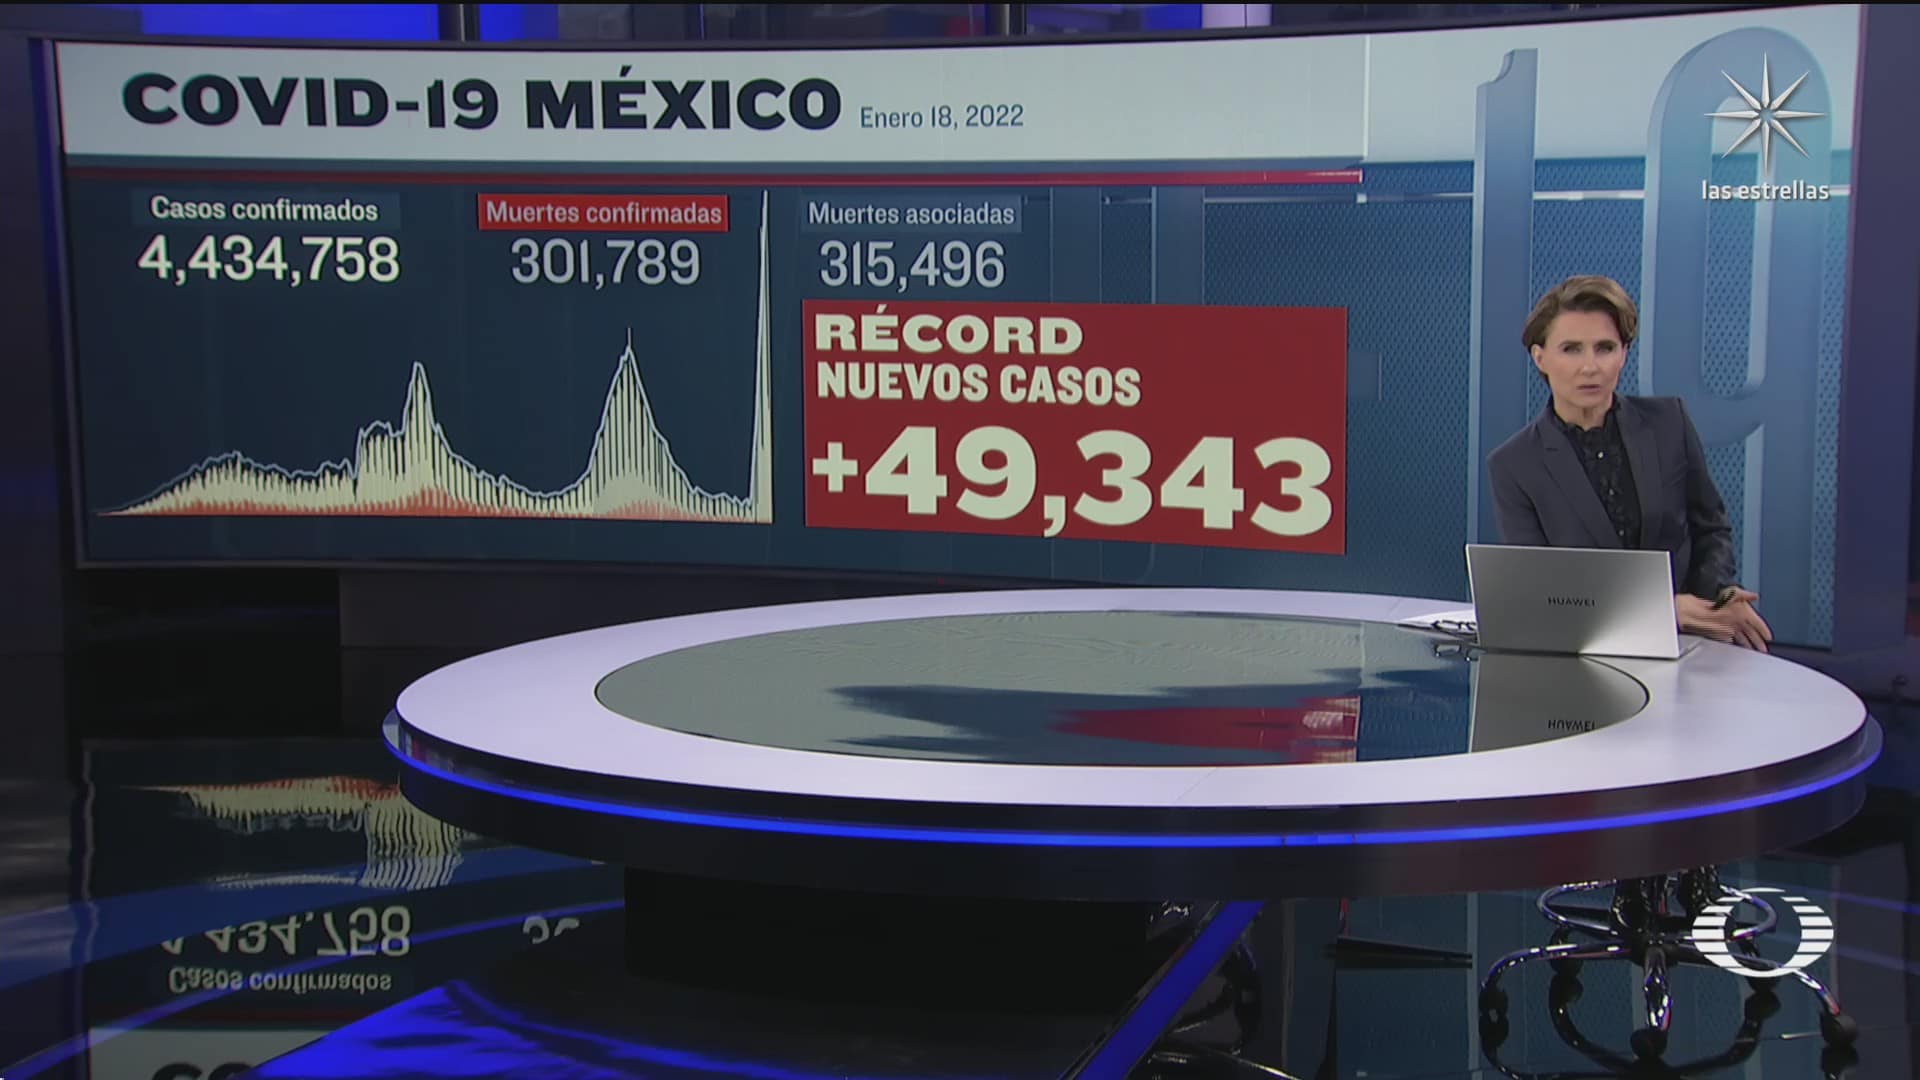 suman en mexico 301 mil 789 muertos por covid